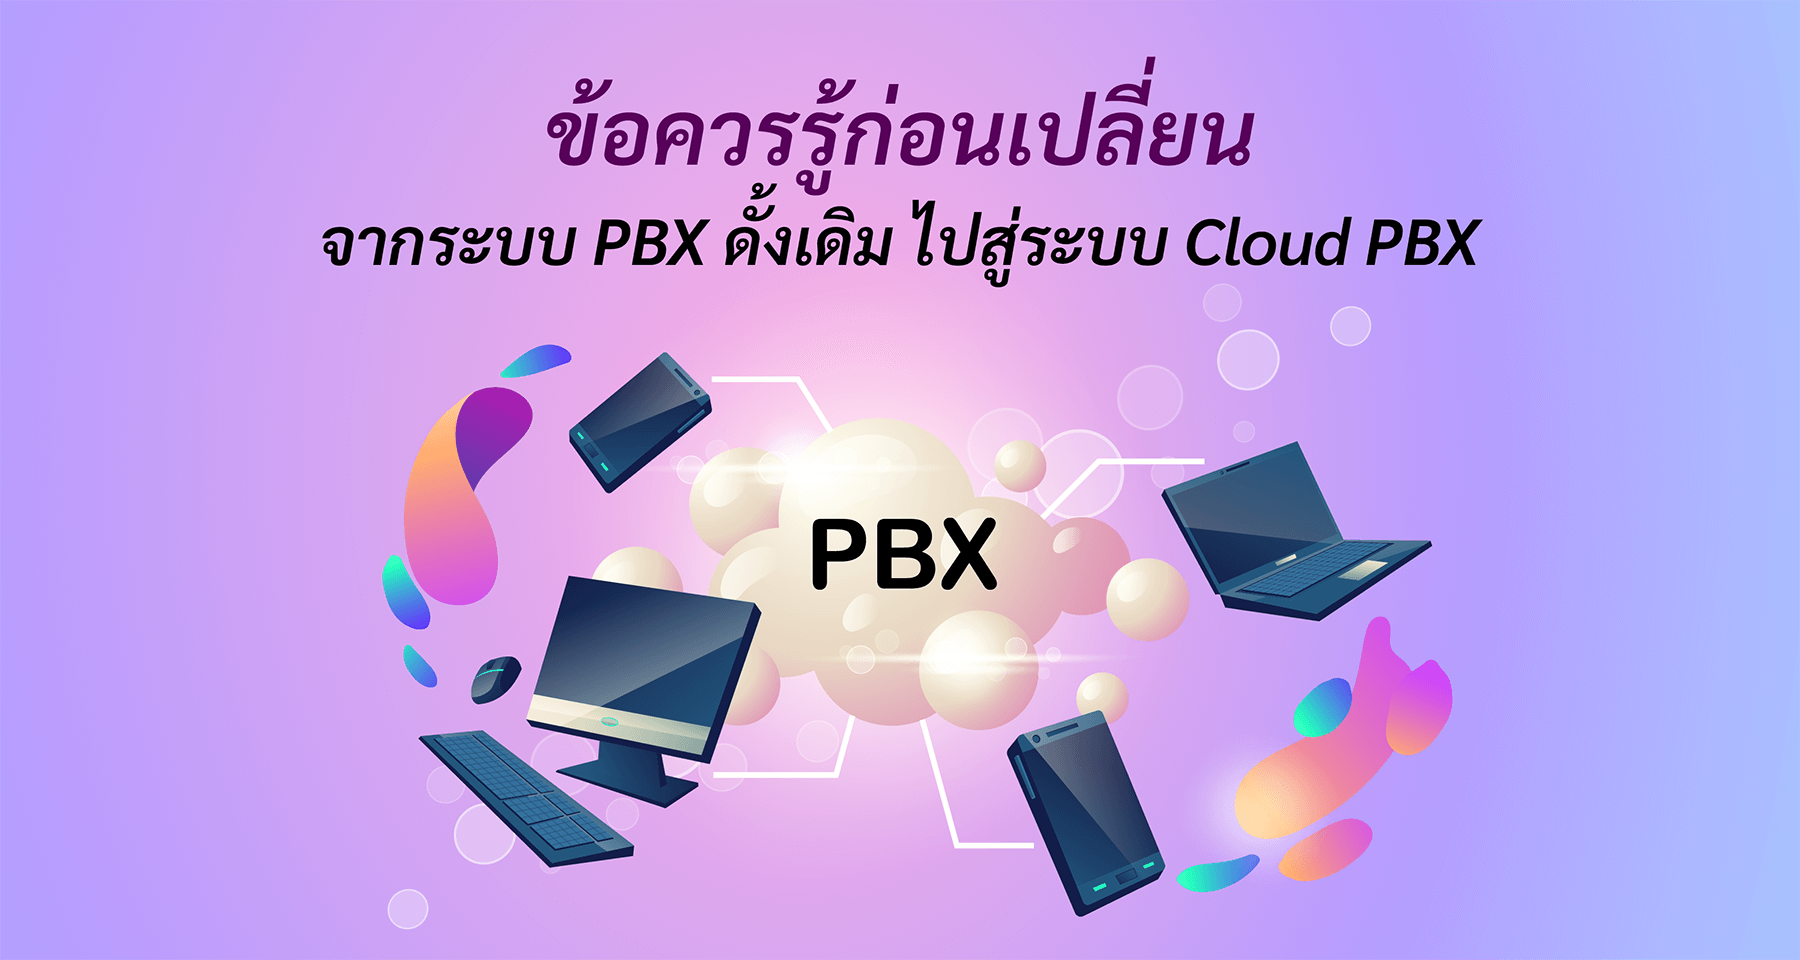 ข้อควรรู้ก่อนเปลี่ยนจากระบบ PBX ดั้งเดิมไปสู่ระบบ Cloud PBX